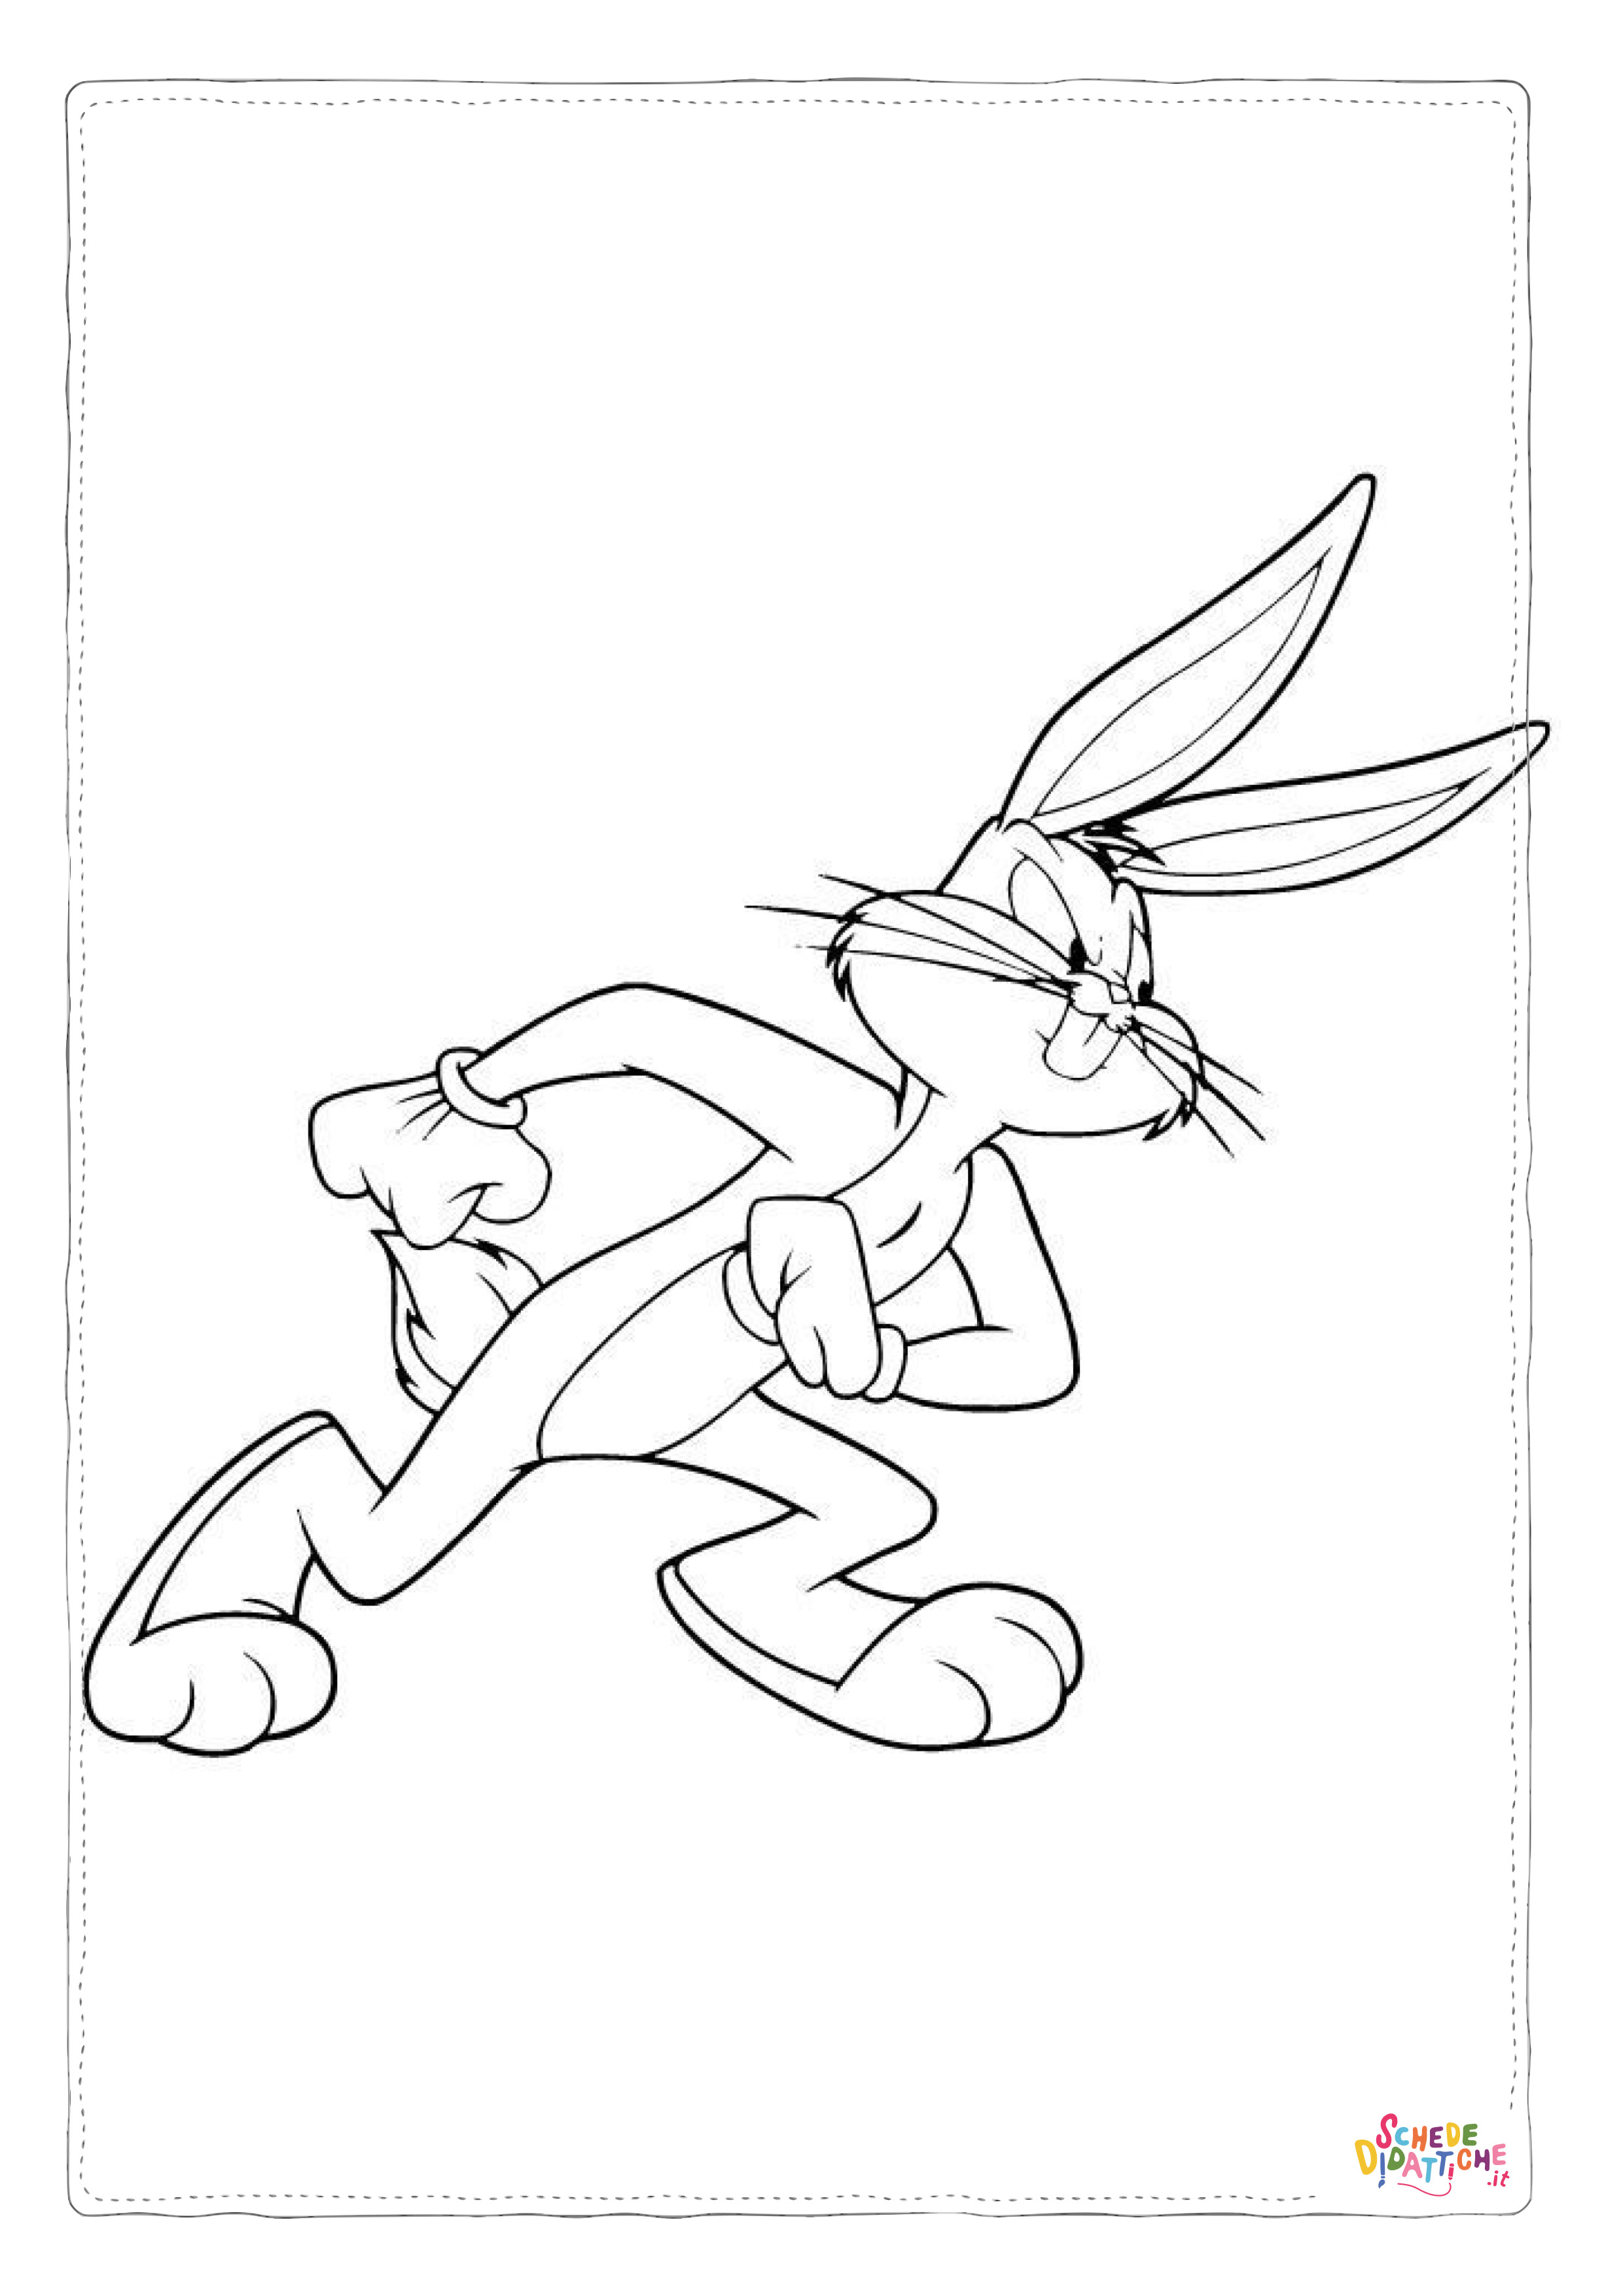 Disegno di Bugs Bunny da stampare e colorare 17